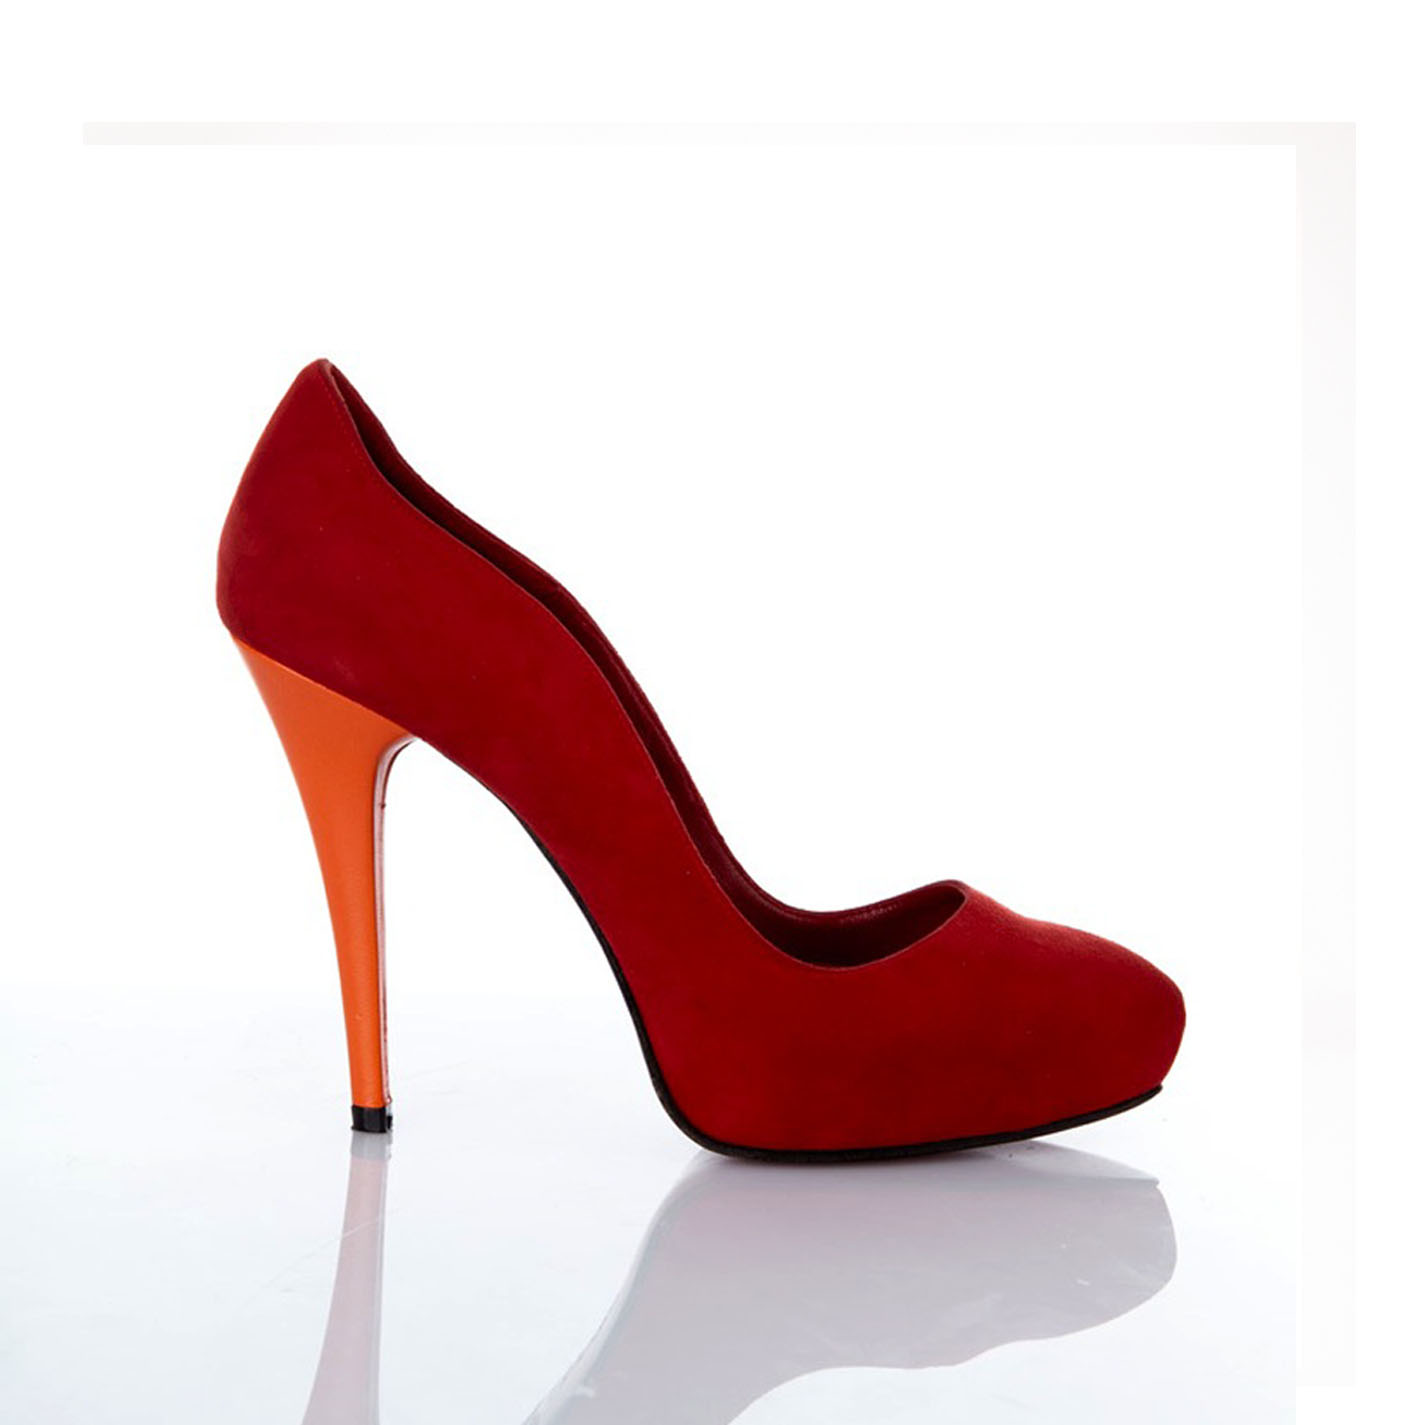 Menagerry pellizco Devorar zapato mujer plataforma oculta tacon 12 cm piel naranja y ante rojo